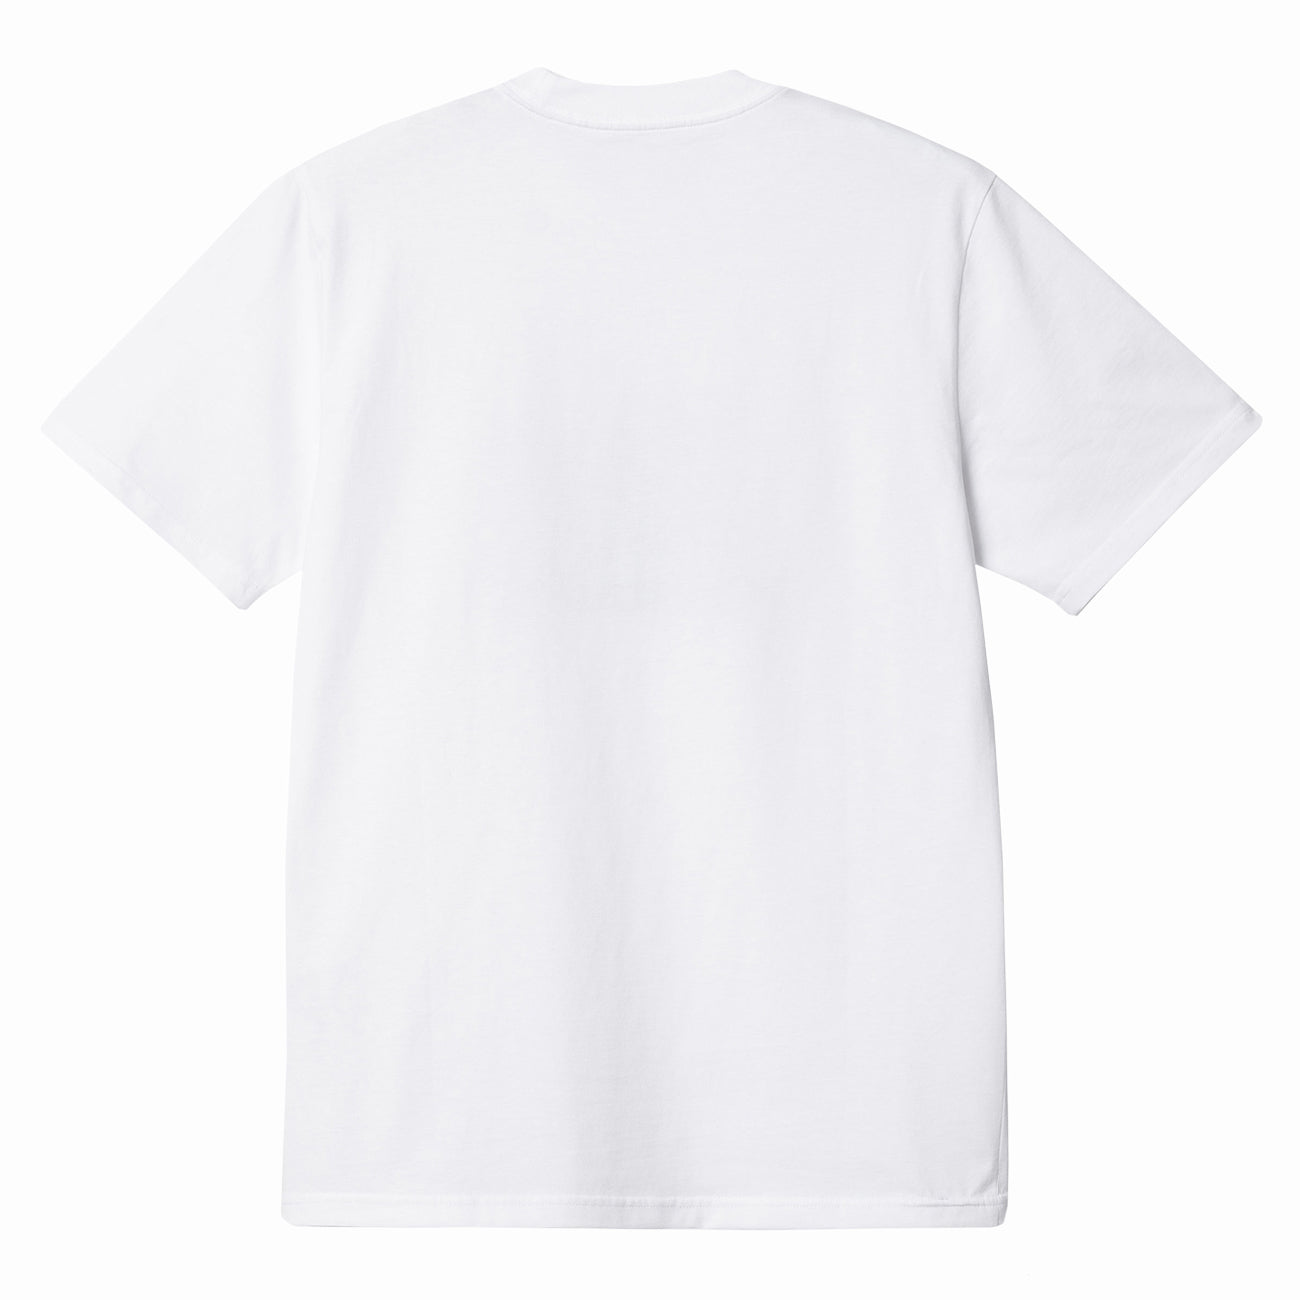 Carhartt WIP S/S Vacanze T-Shirt Herren White